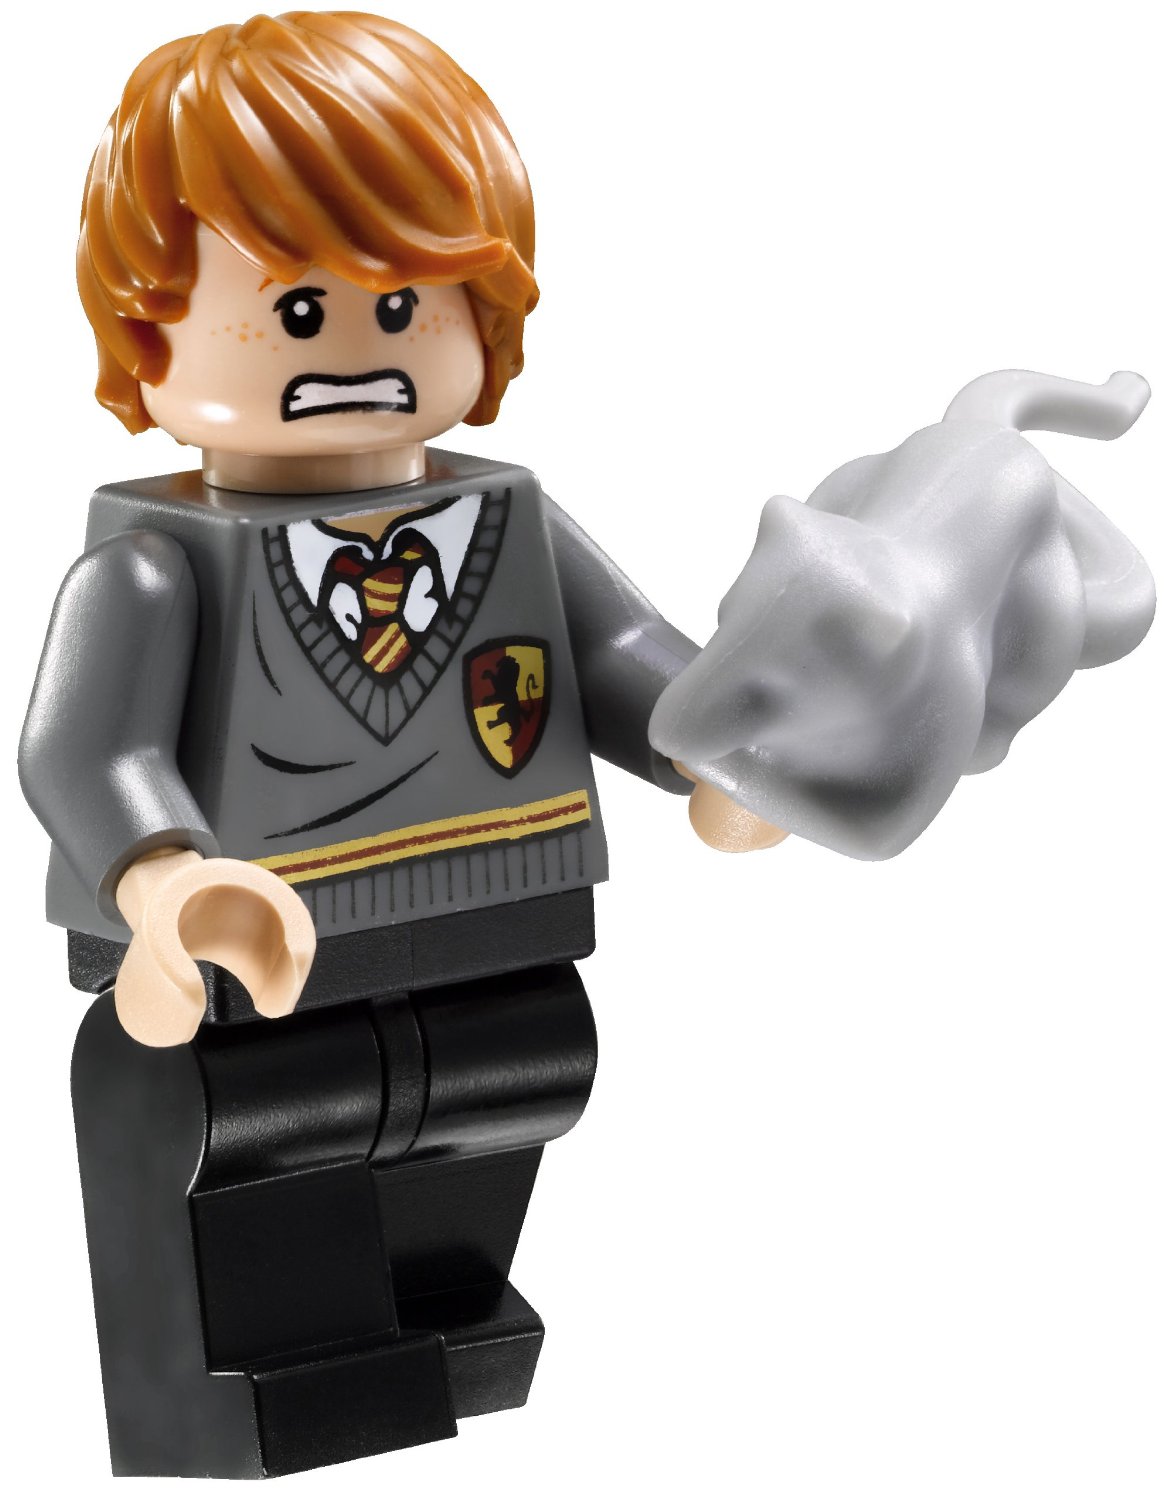 Ron als Minifigur im LEGO-Set Hagrids Hütte 4738